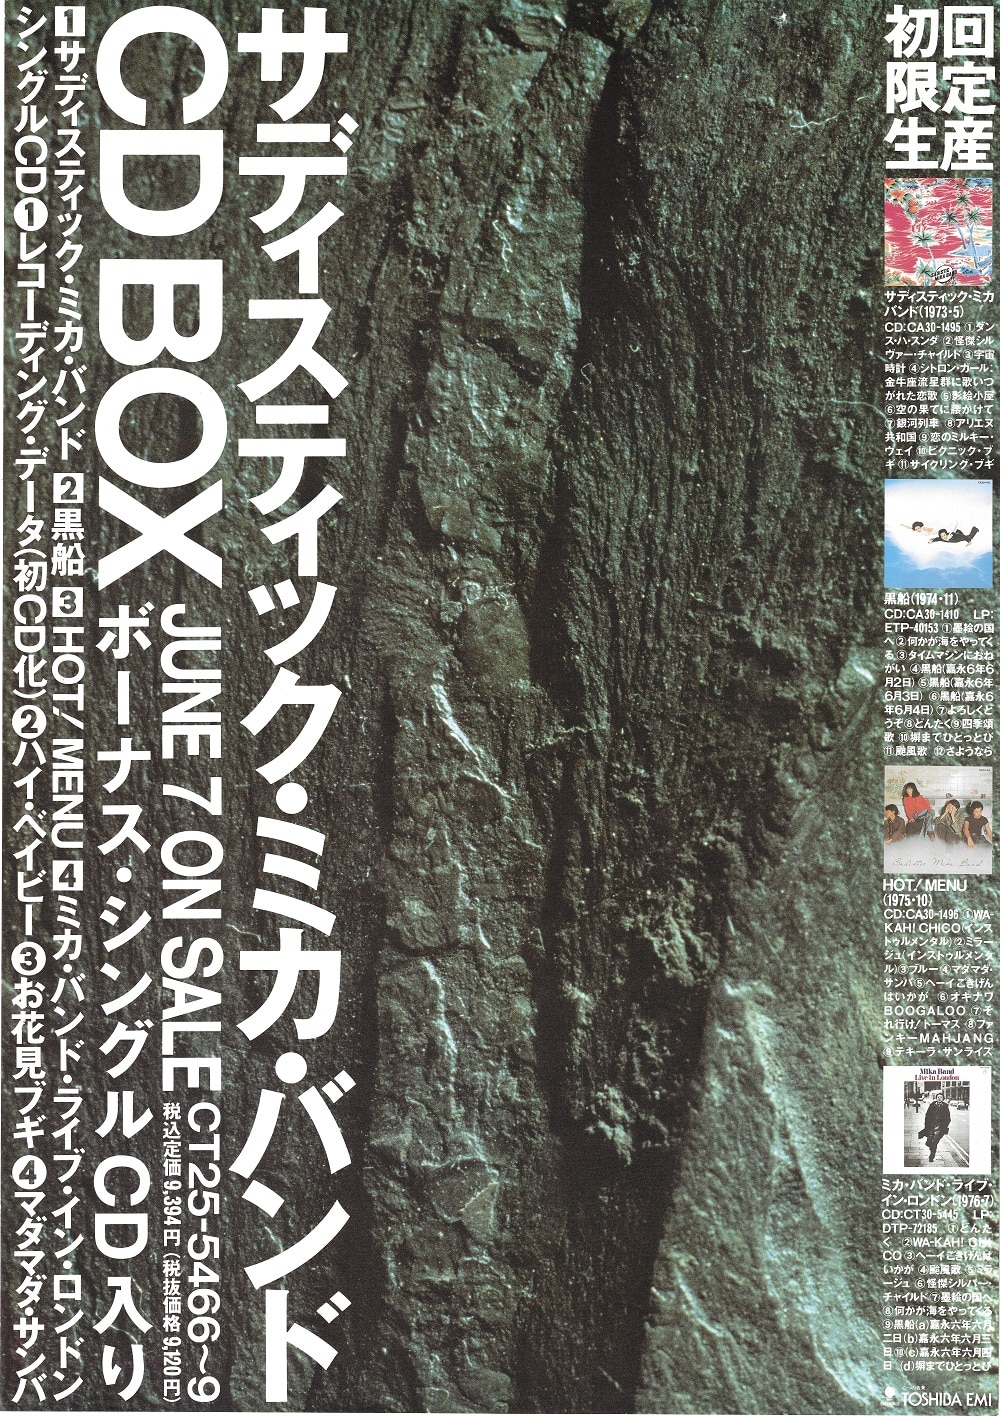 サディスティック・ミカ・バンド CD BOX B2ポスター | まんだらけ